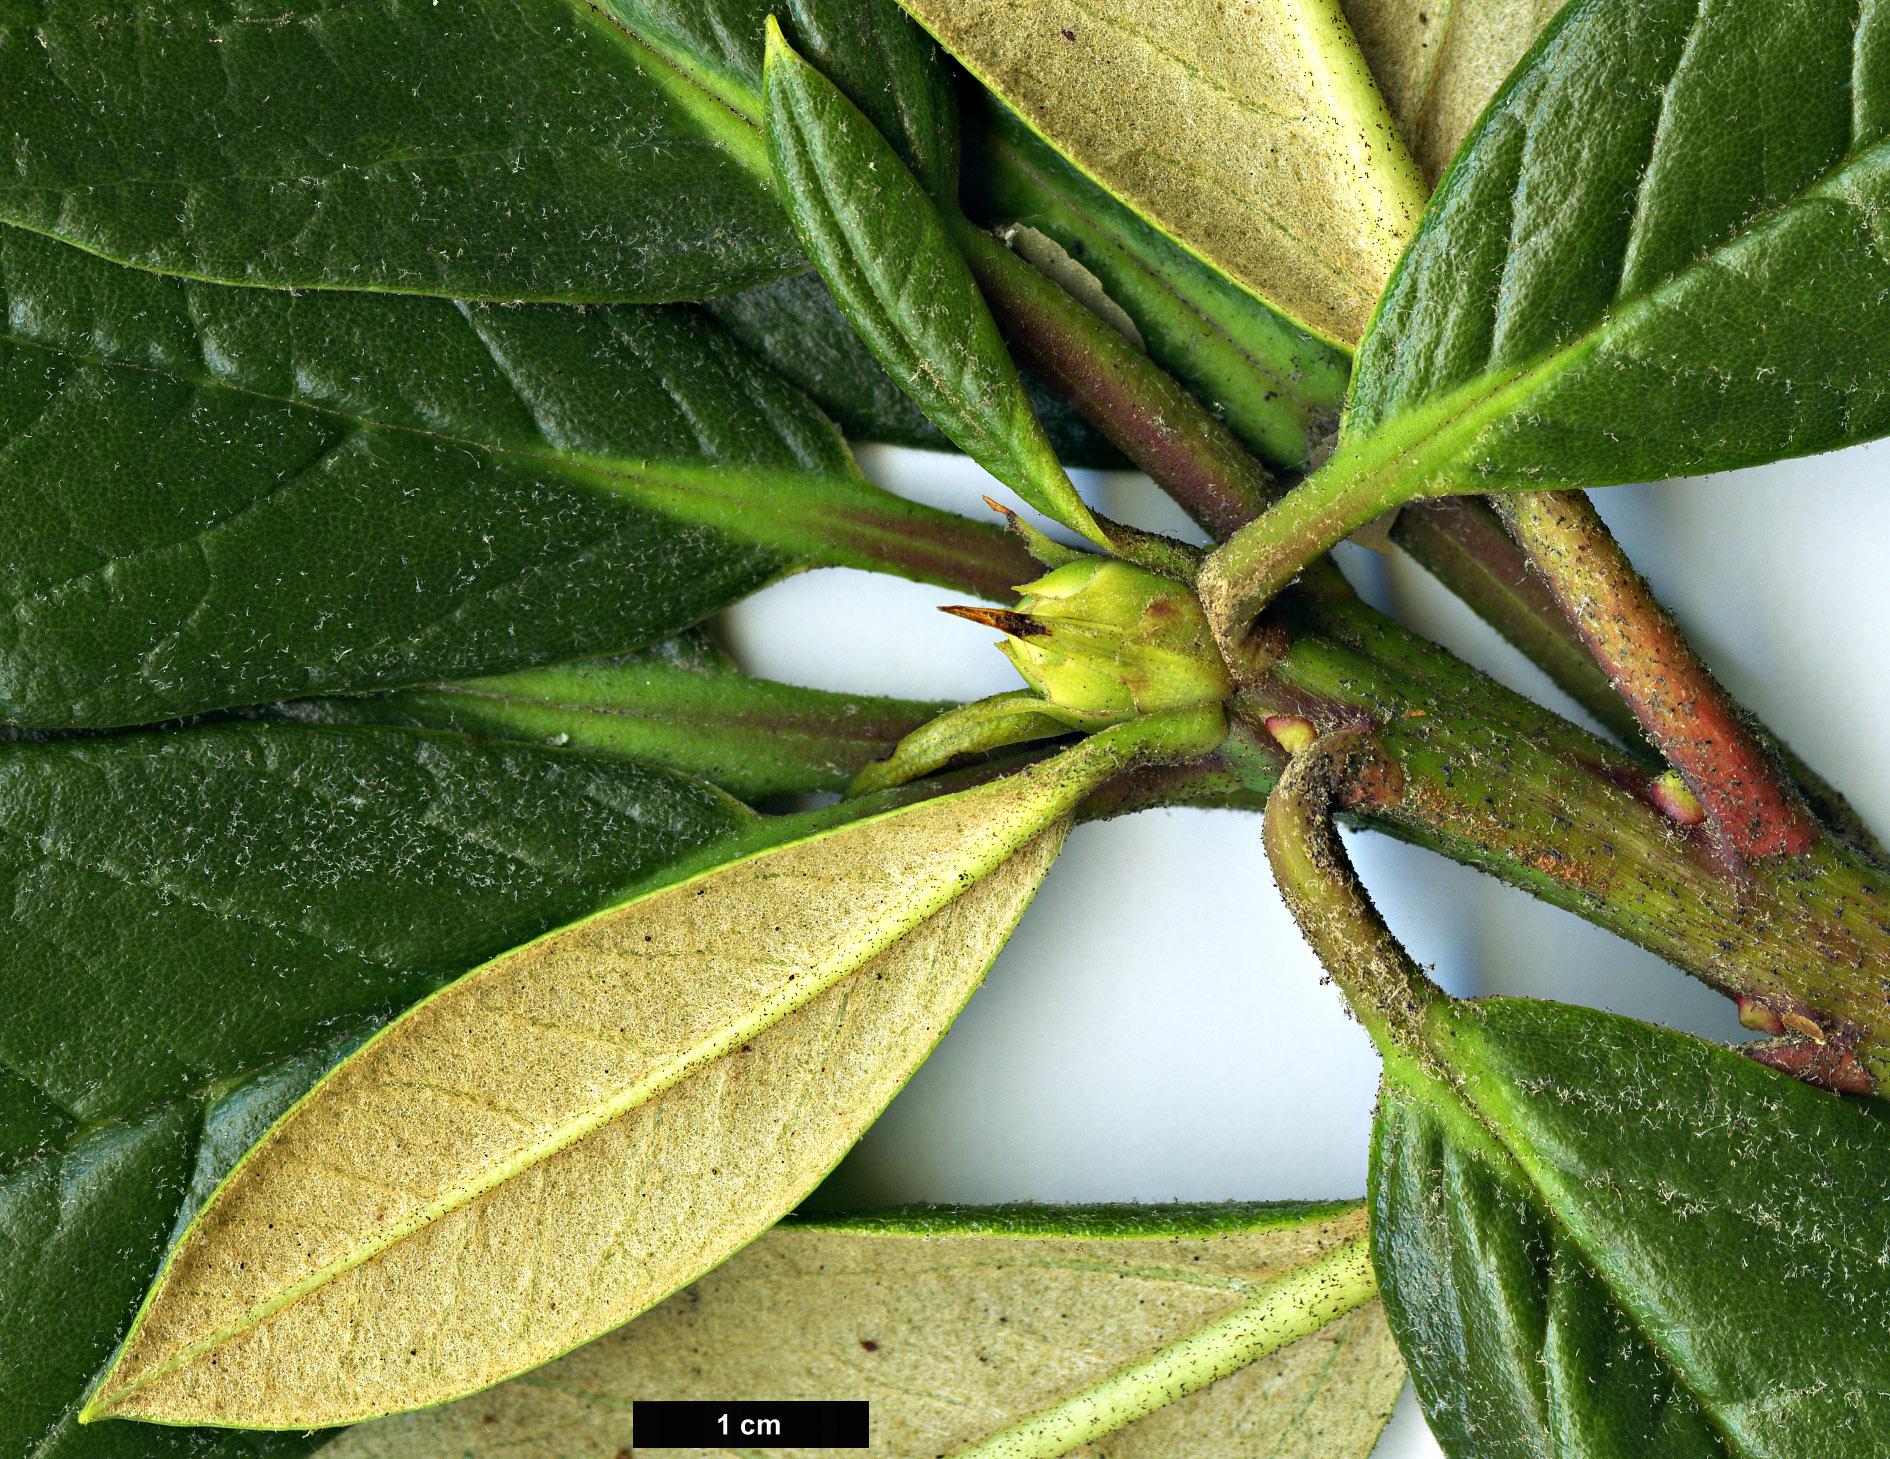 High resolution image: Family: Ericaceae - Genus: Rhododendron - Taxon: zeylanicum